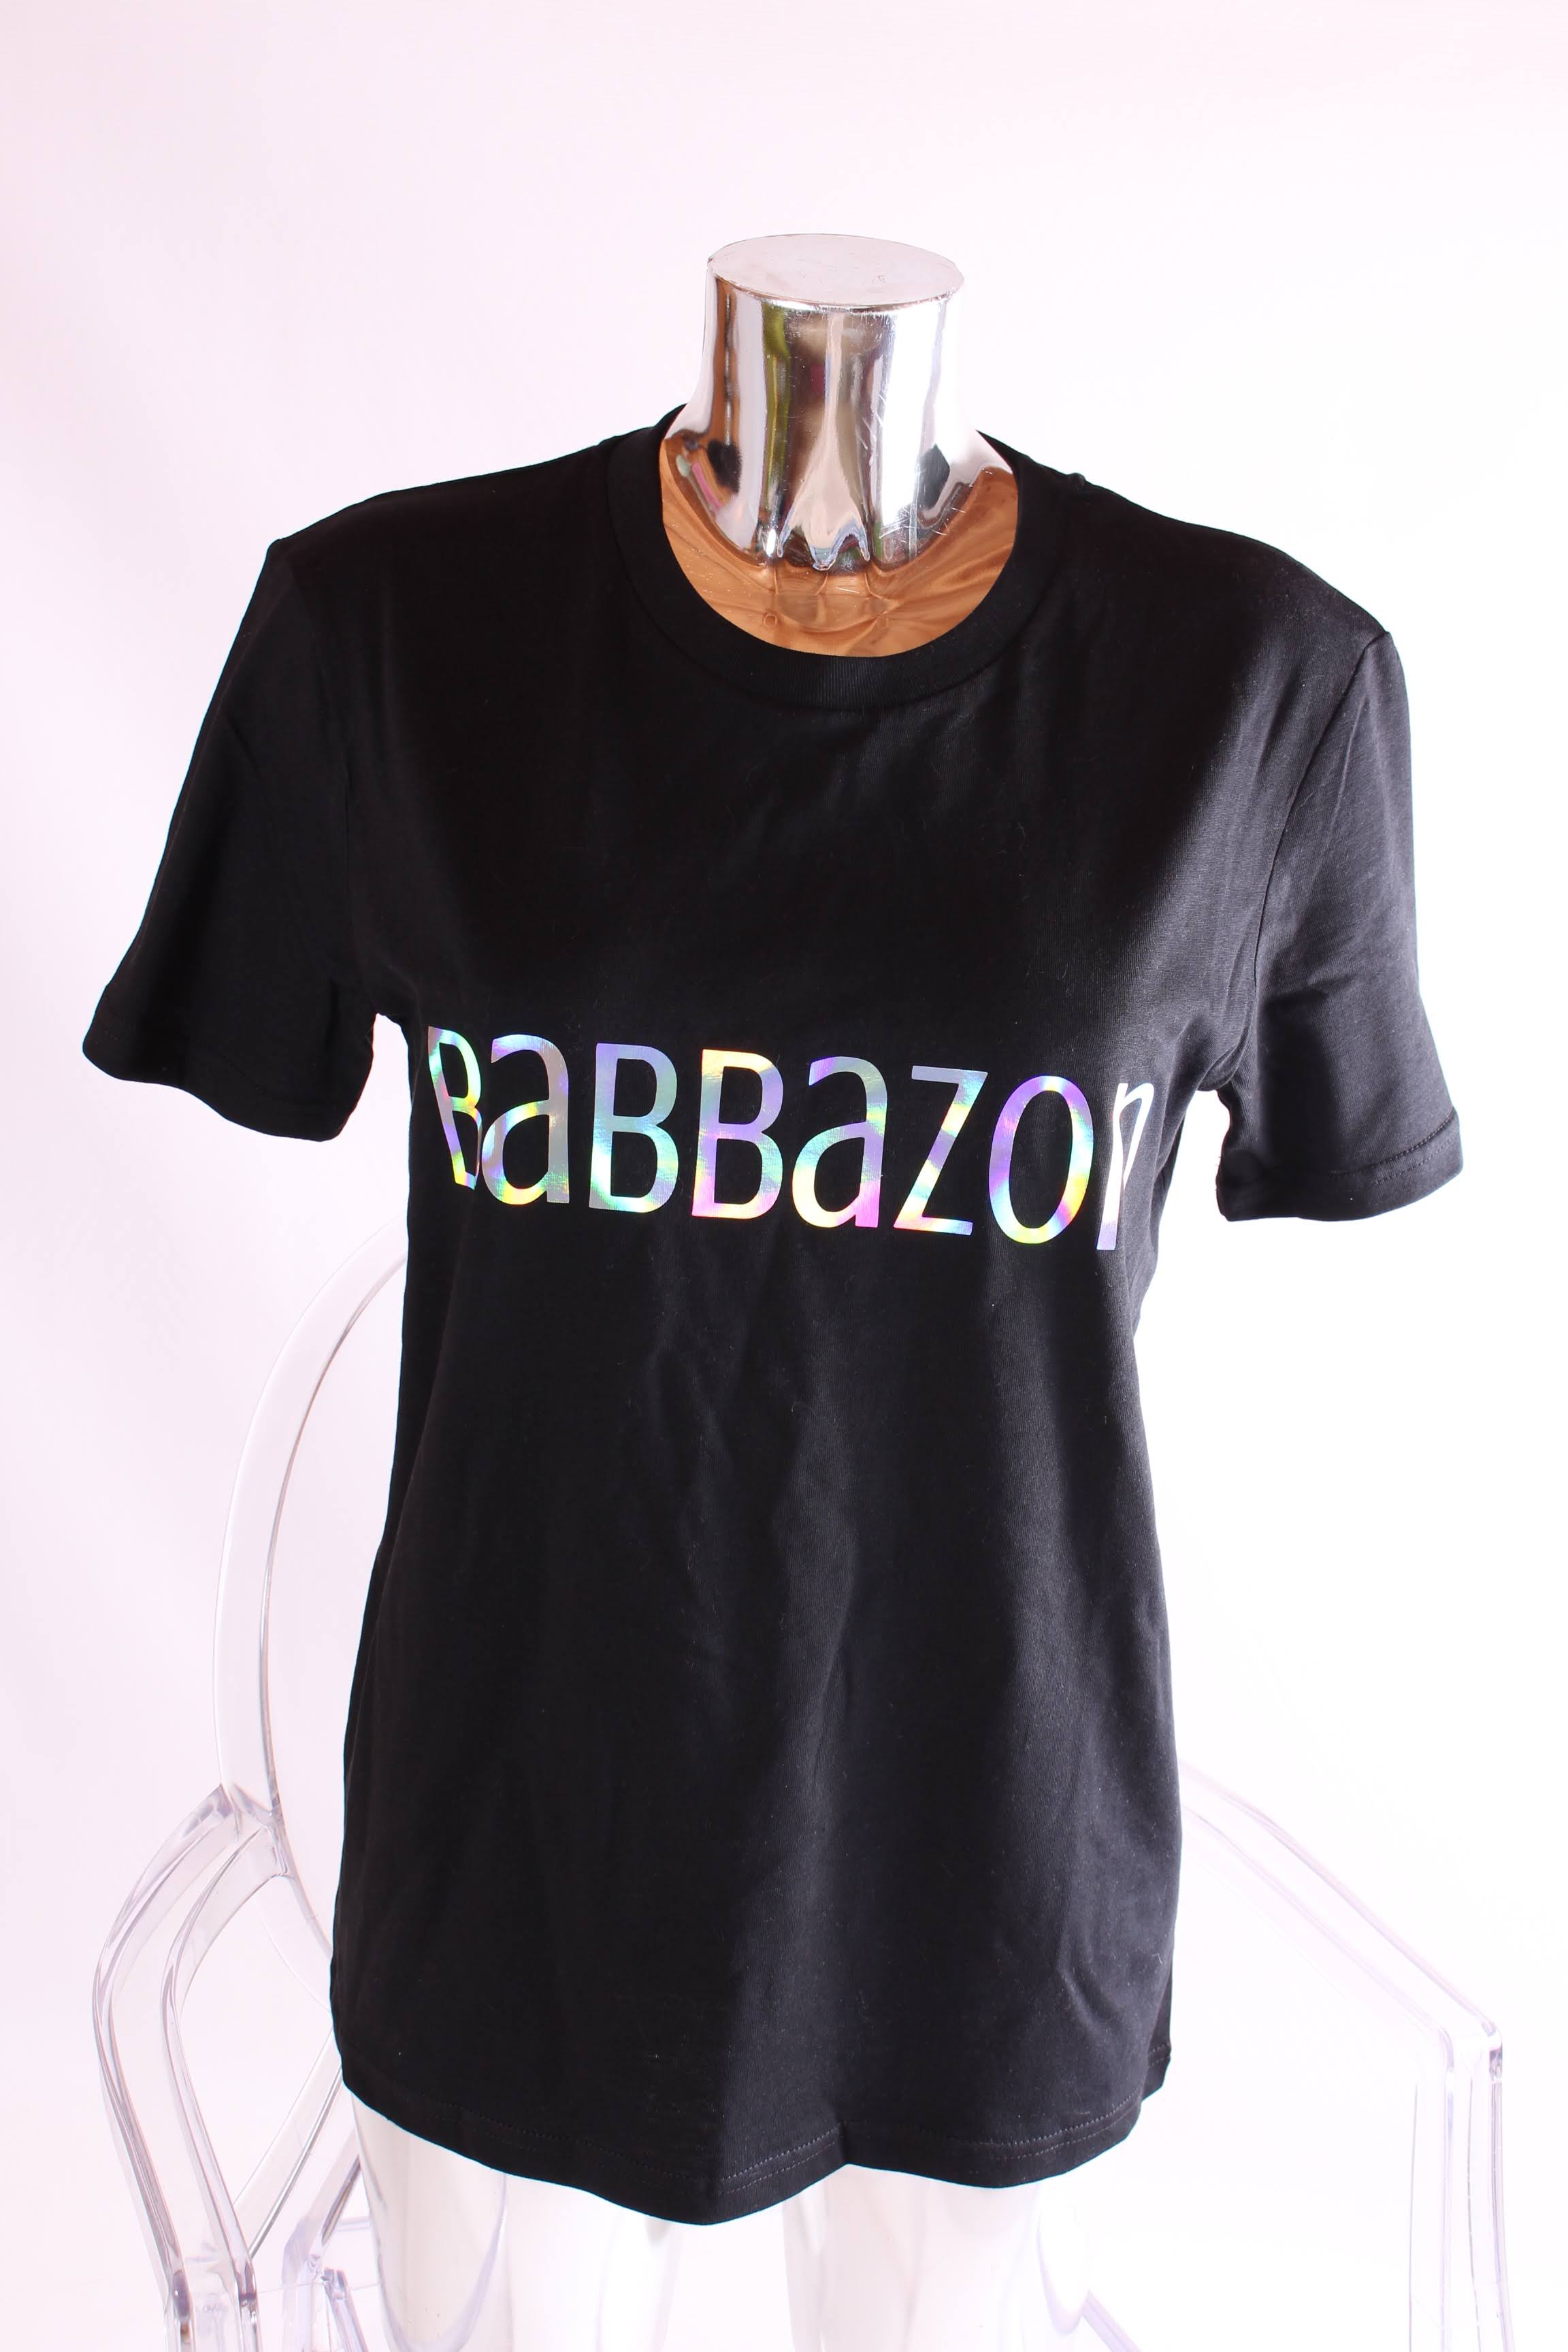 Babbazon T-Shirt - Babbazon French T-Shirt